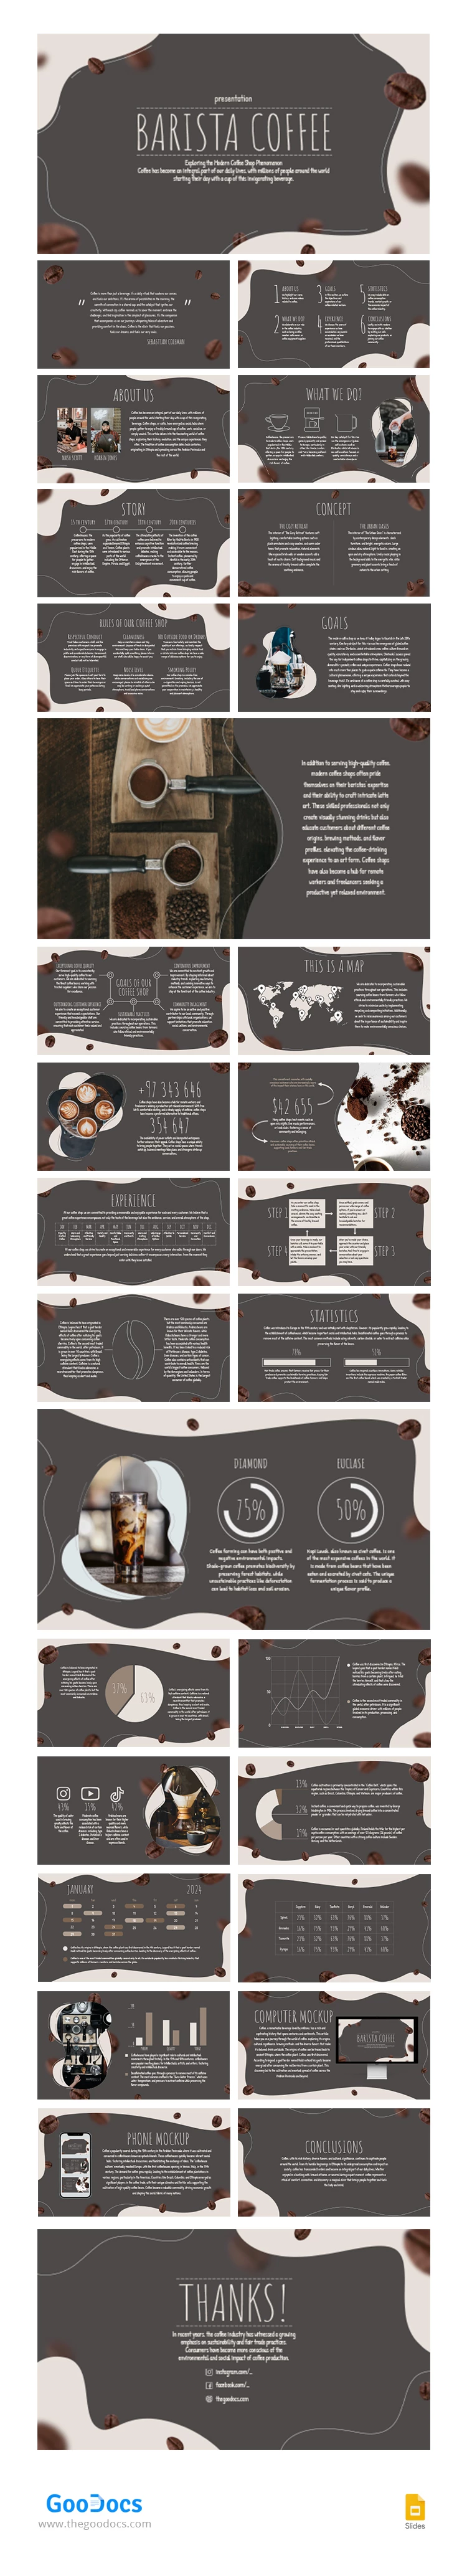 Café brun minimaliste - free Google Docs Template - 10067016